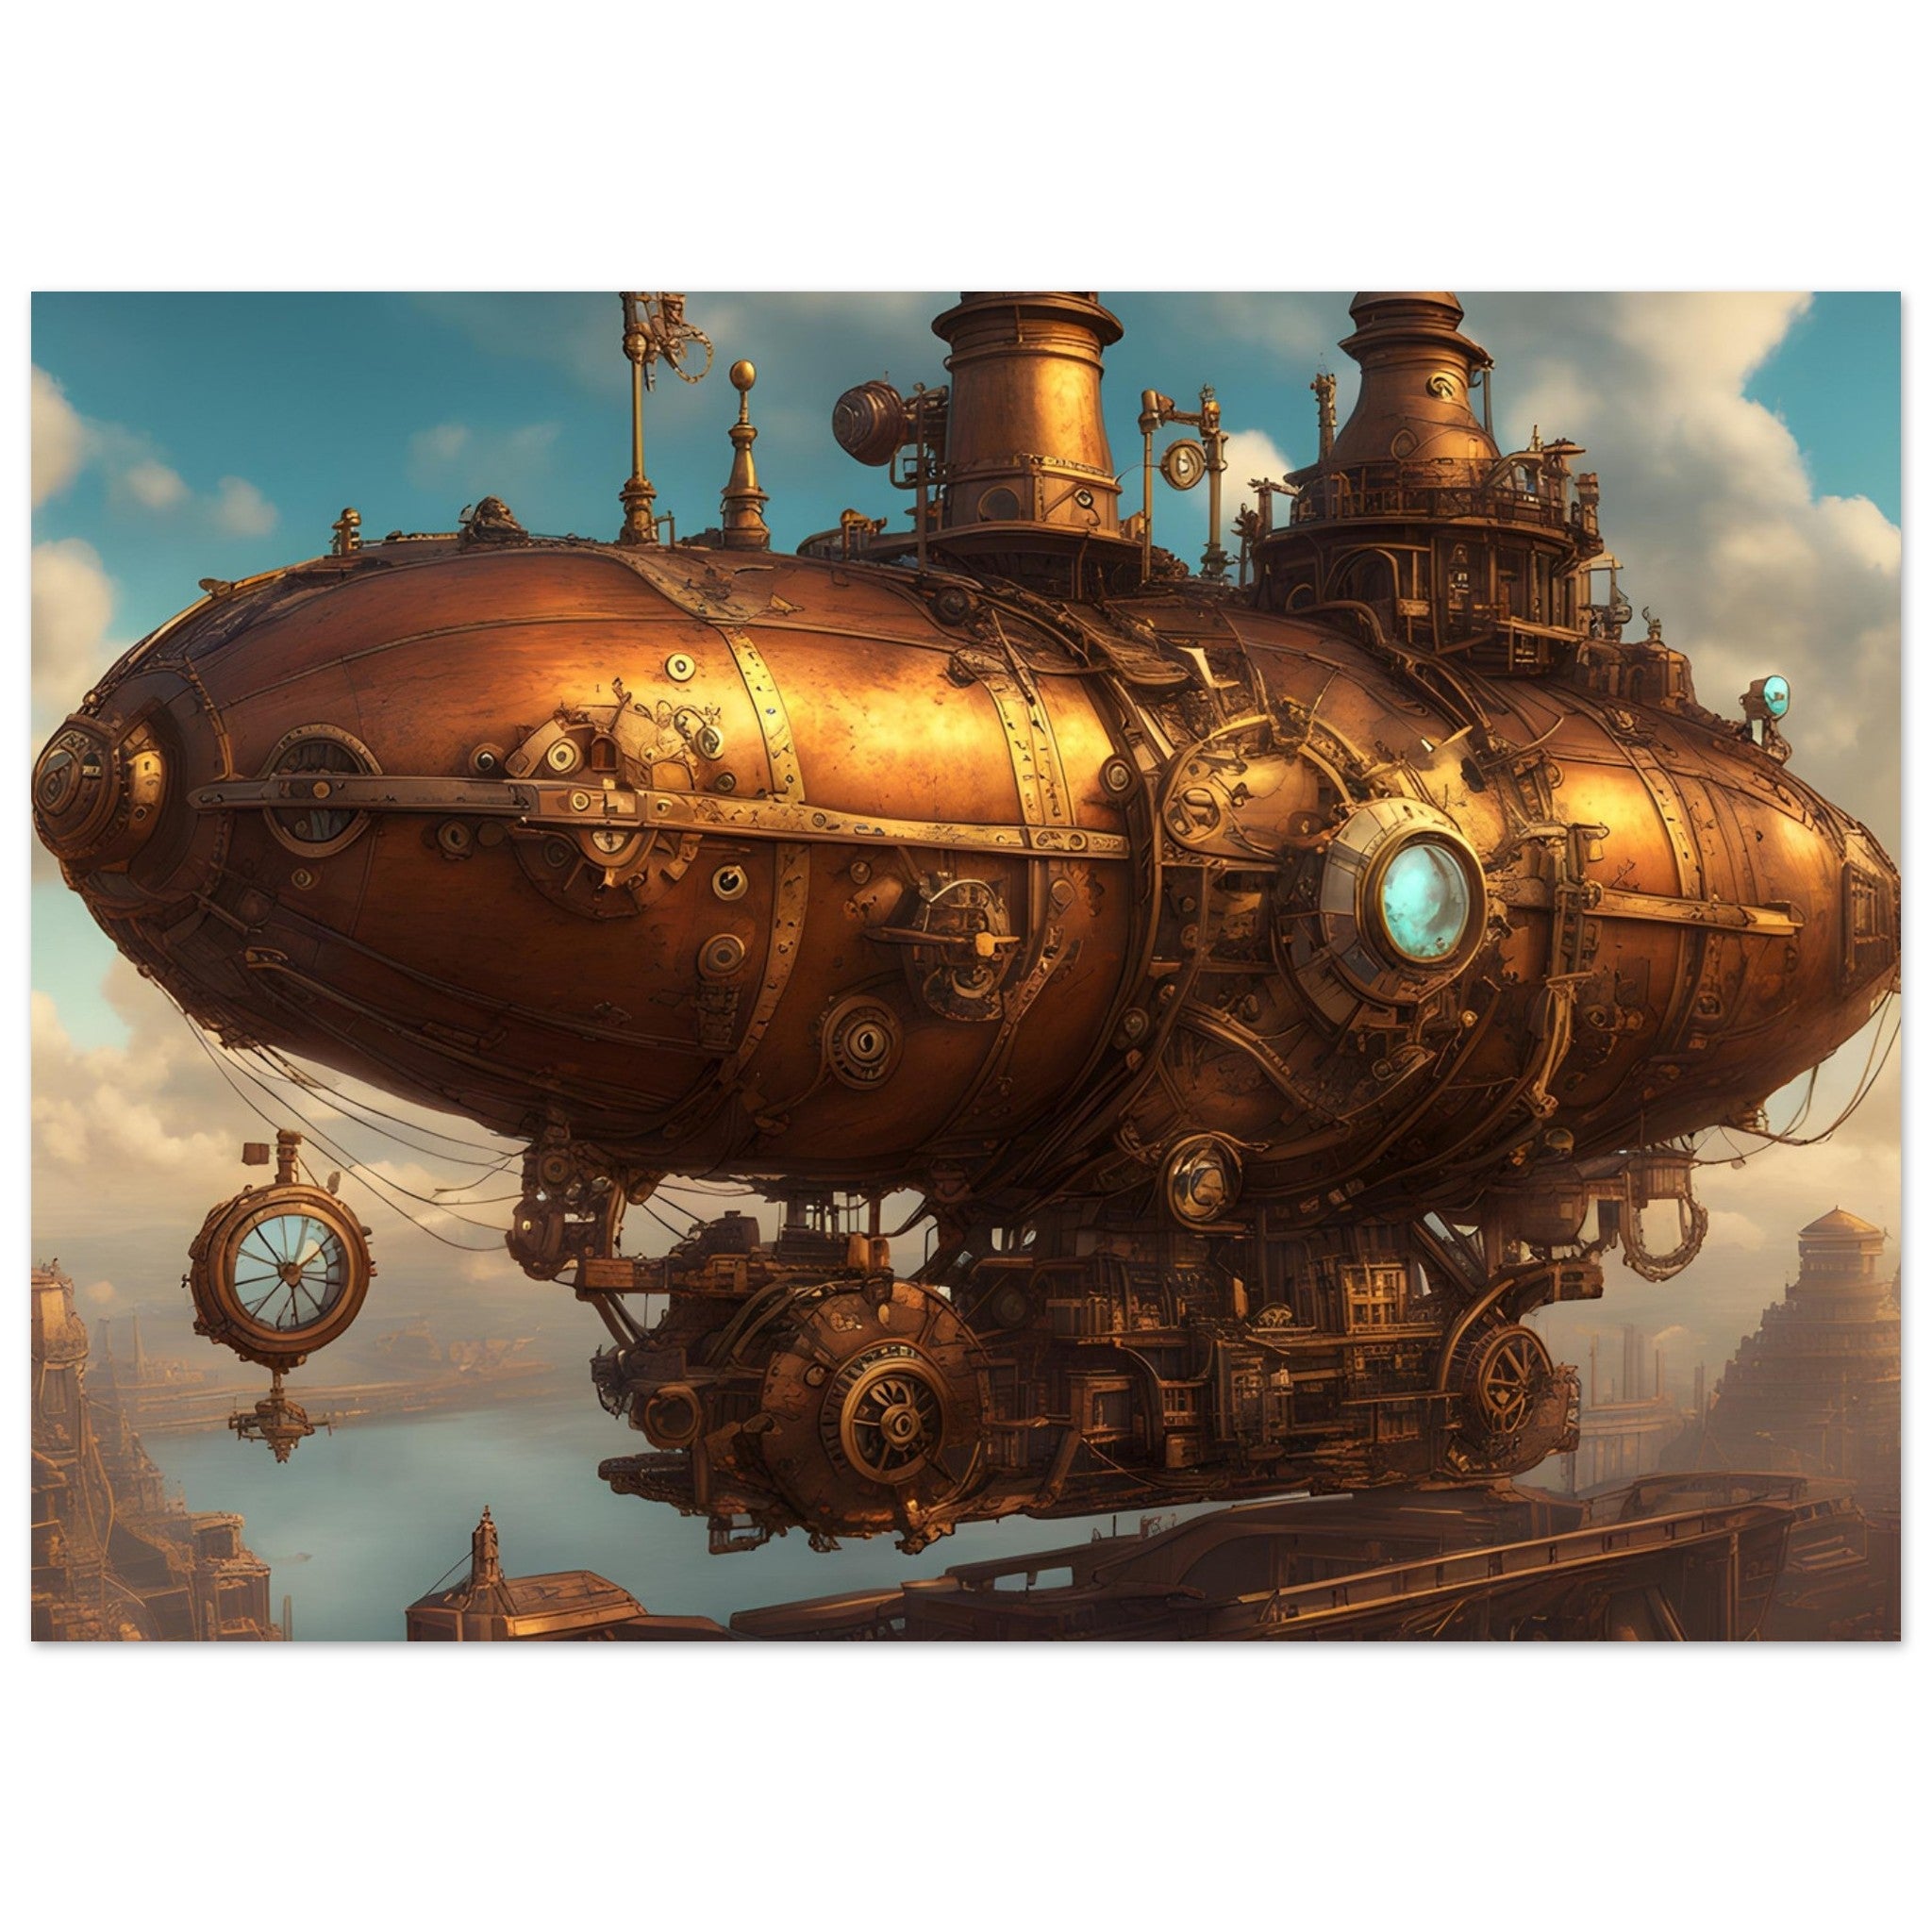 Steampunk Art - The Airship Nebula Navigator